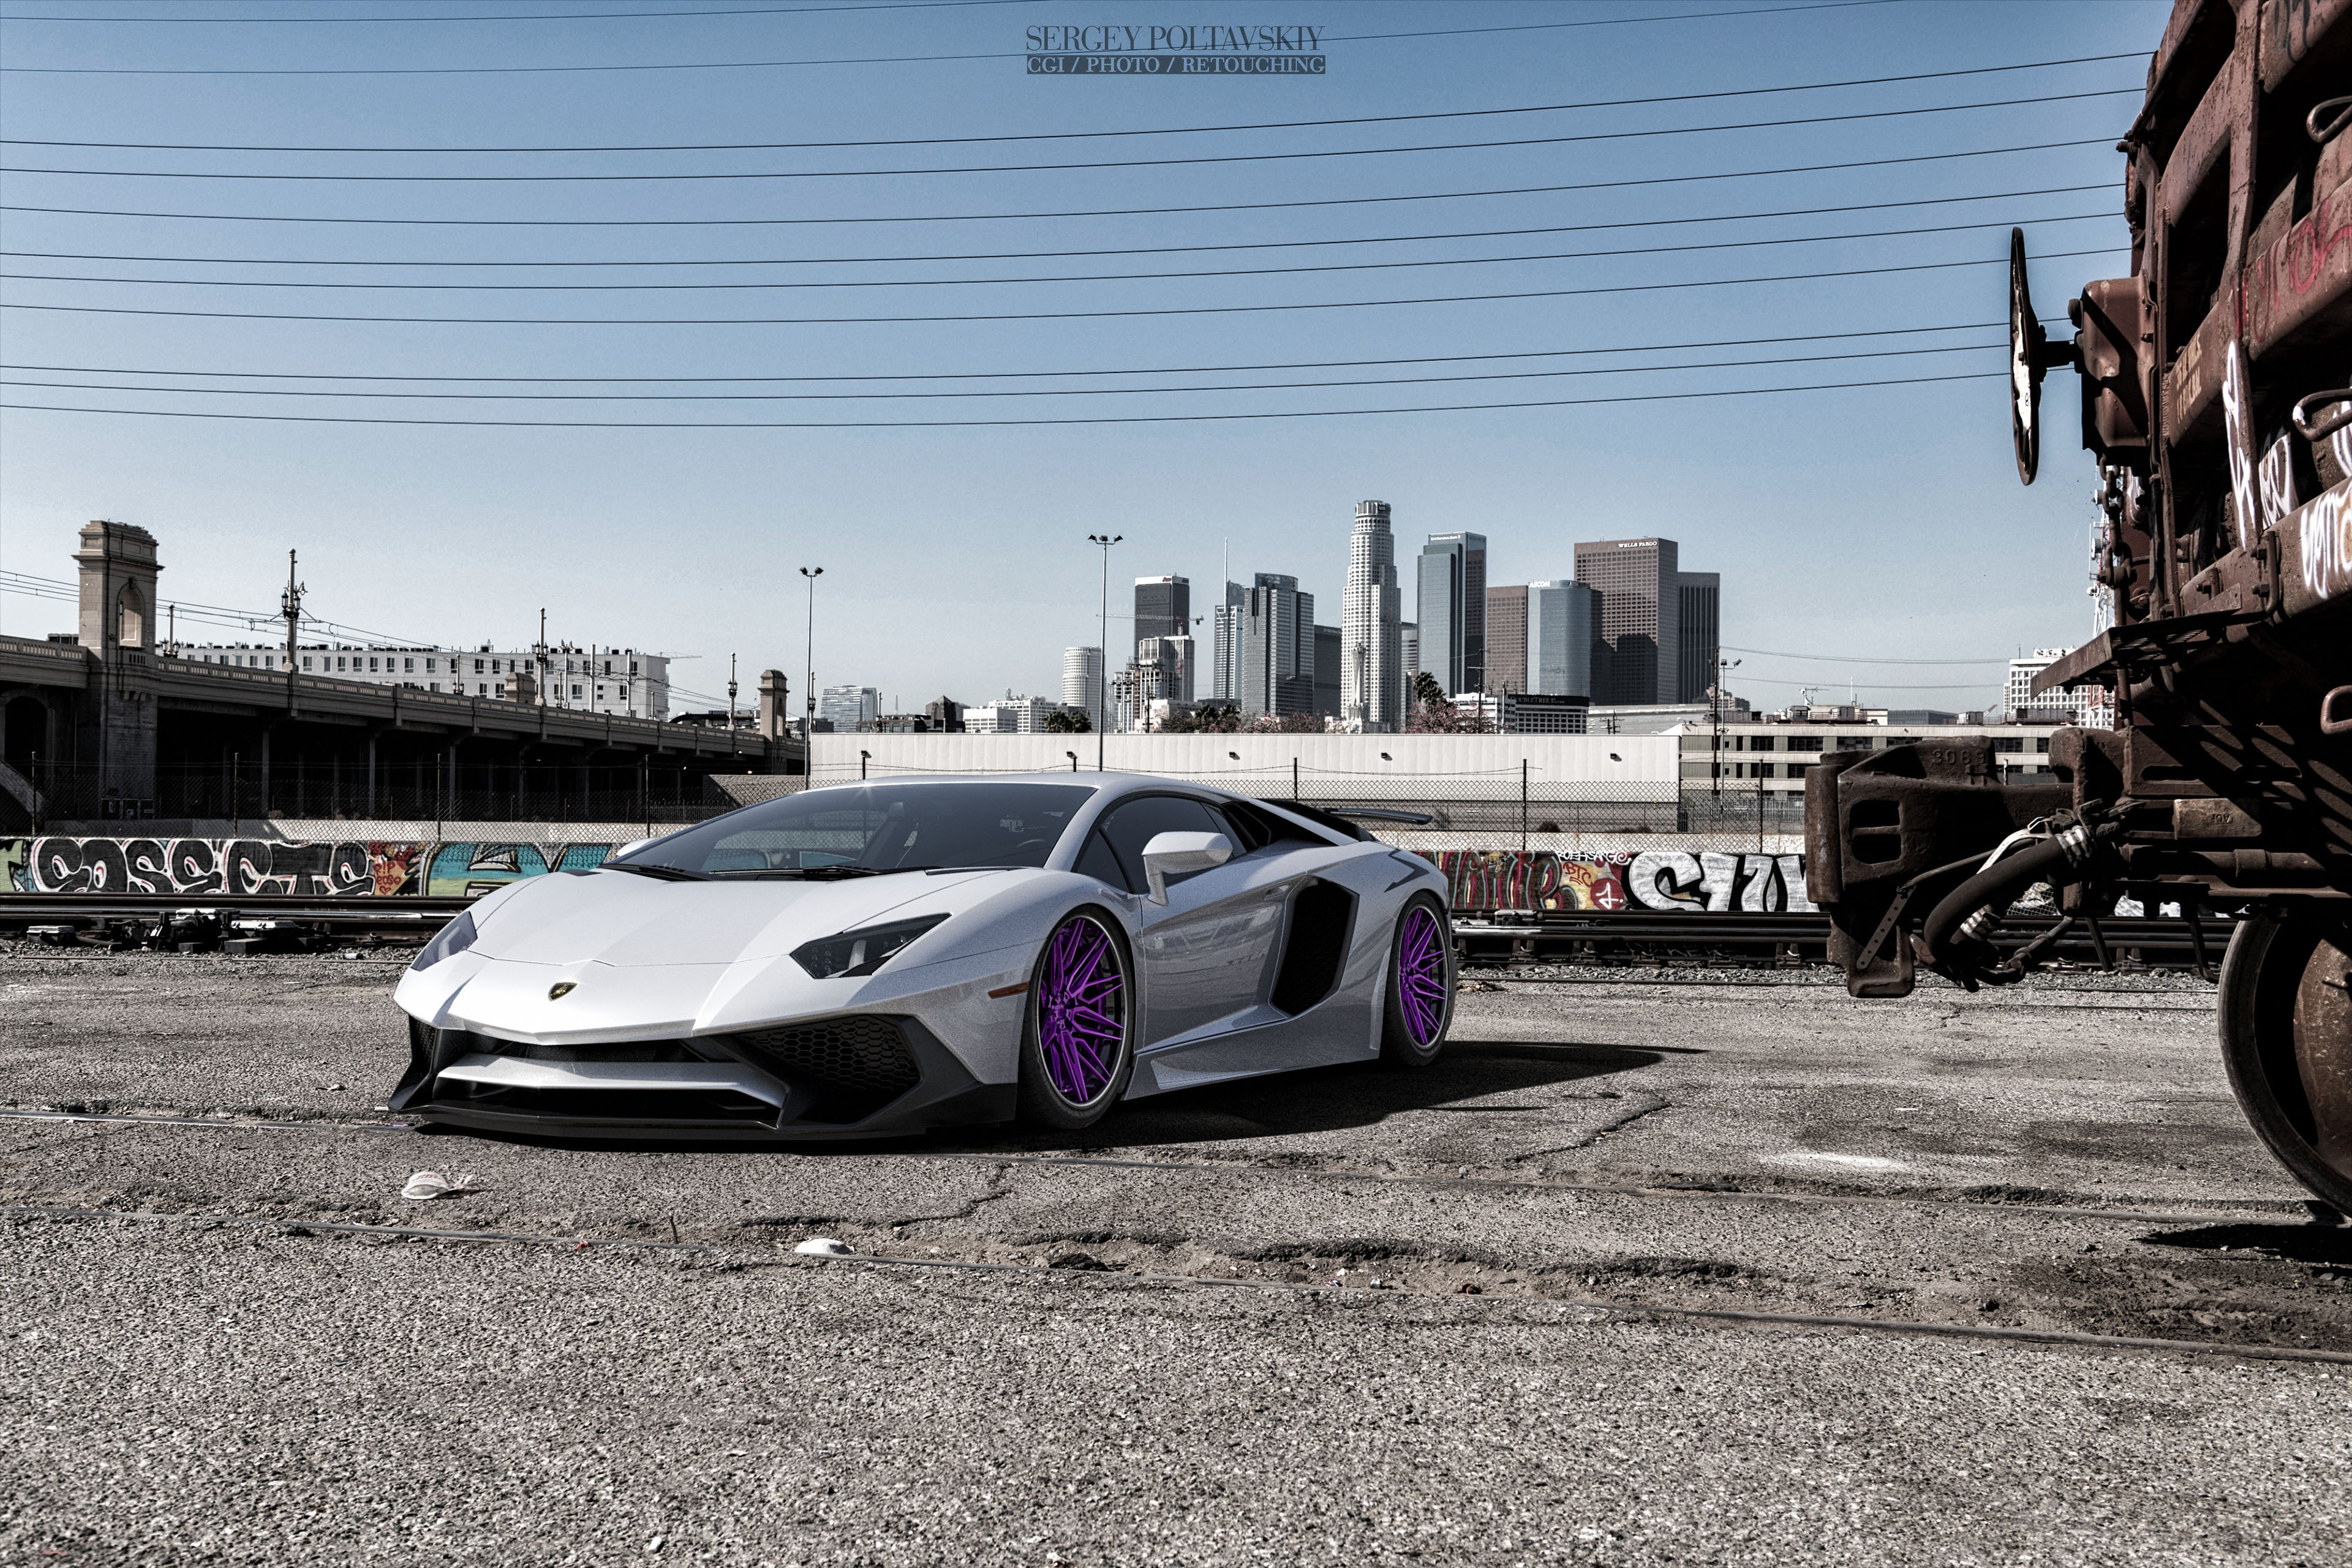 White Lamborghini on purple rims